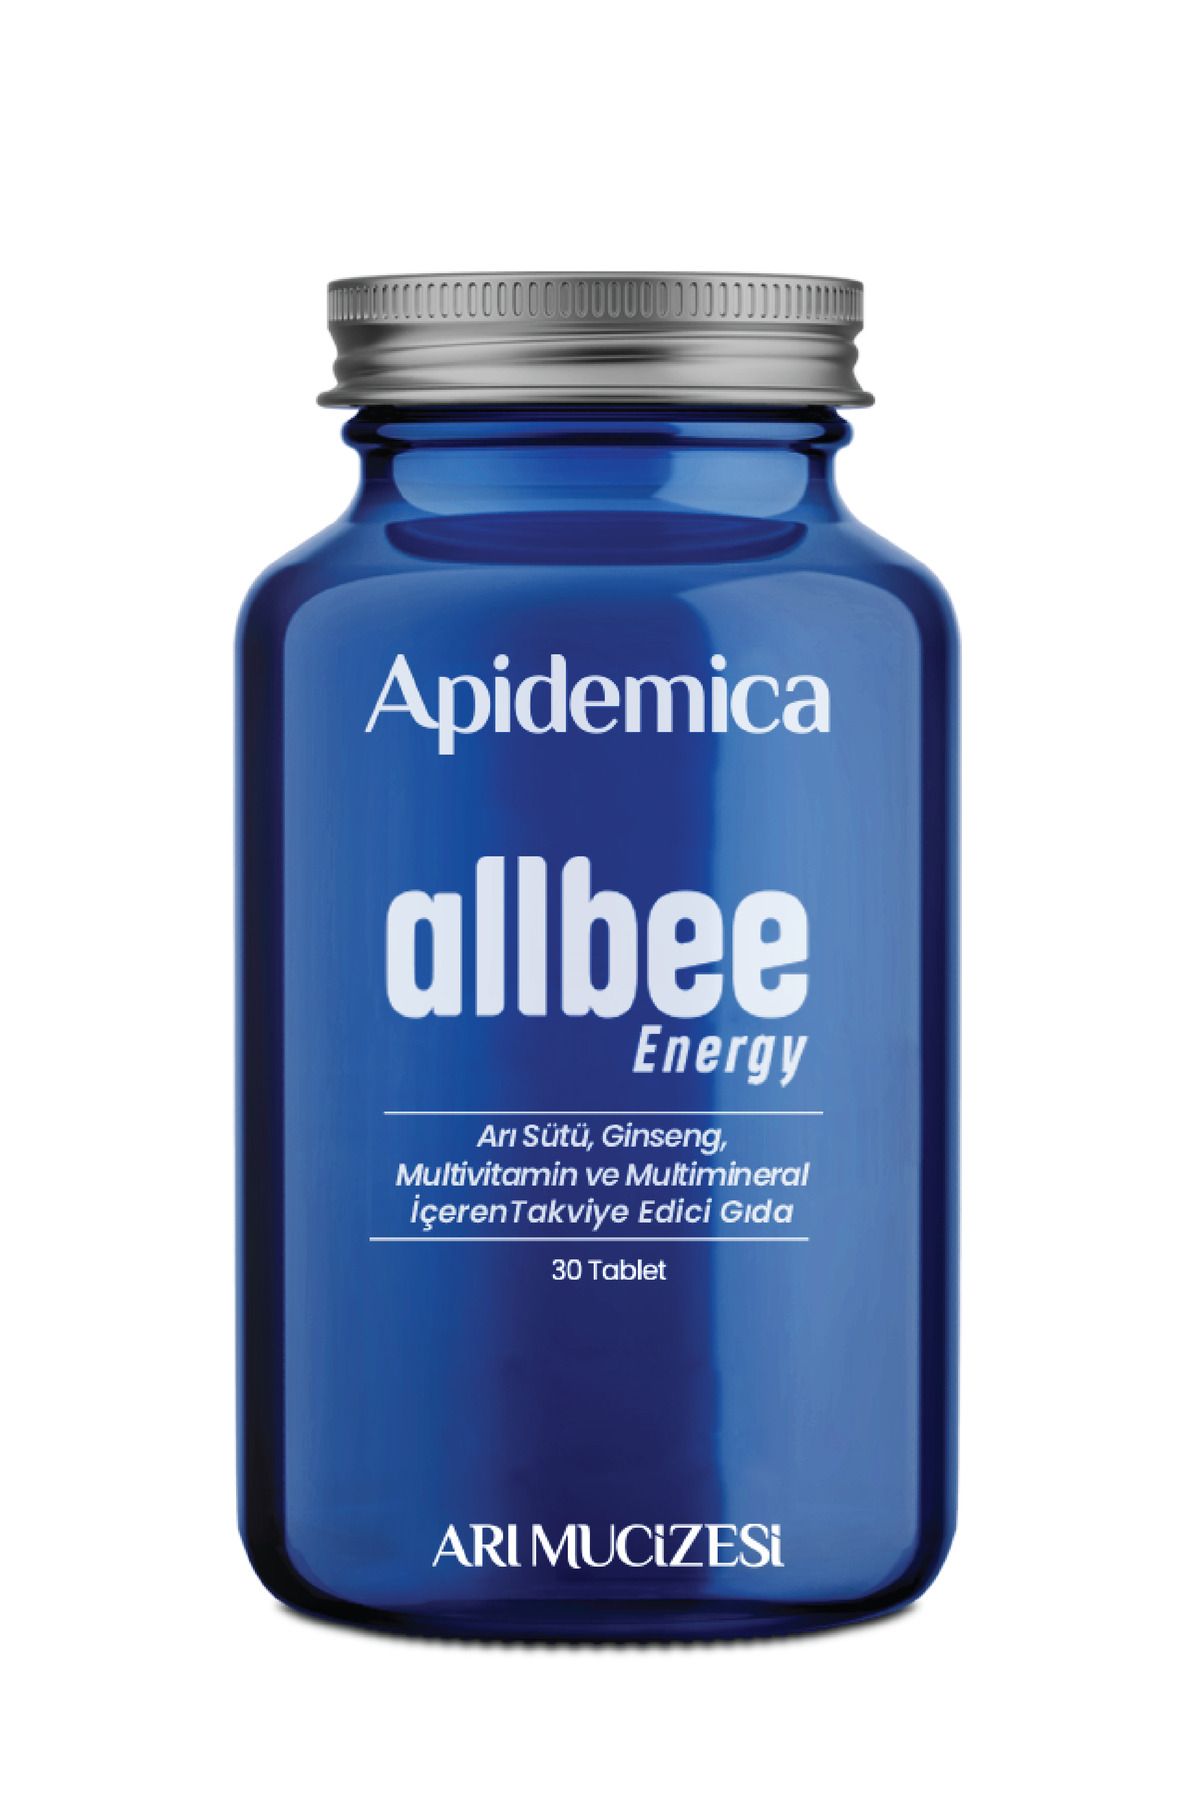 Arı Mucizesi Apidemica Allbee Energy (arı Sütü, Propolis, Perga, Polen, 11 Vitamin, Ginseng, 6 Mineral)